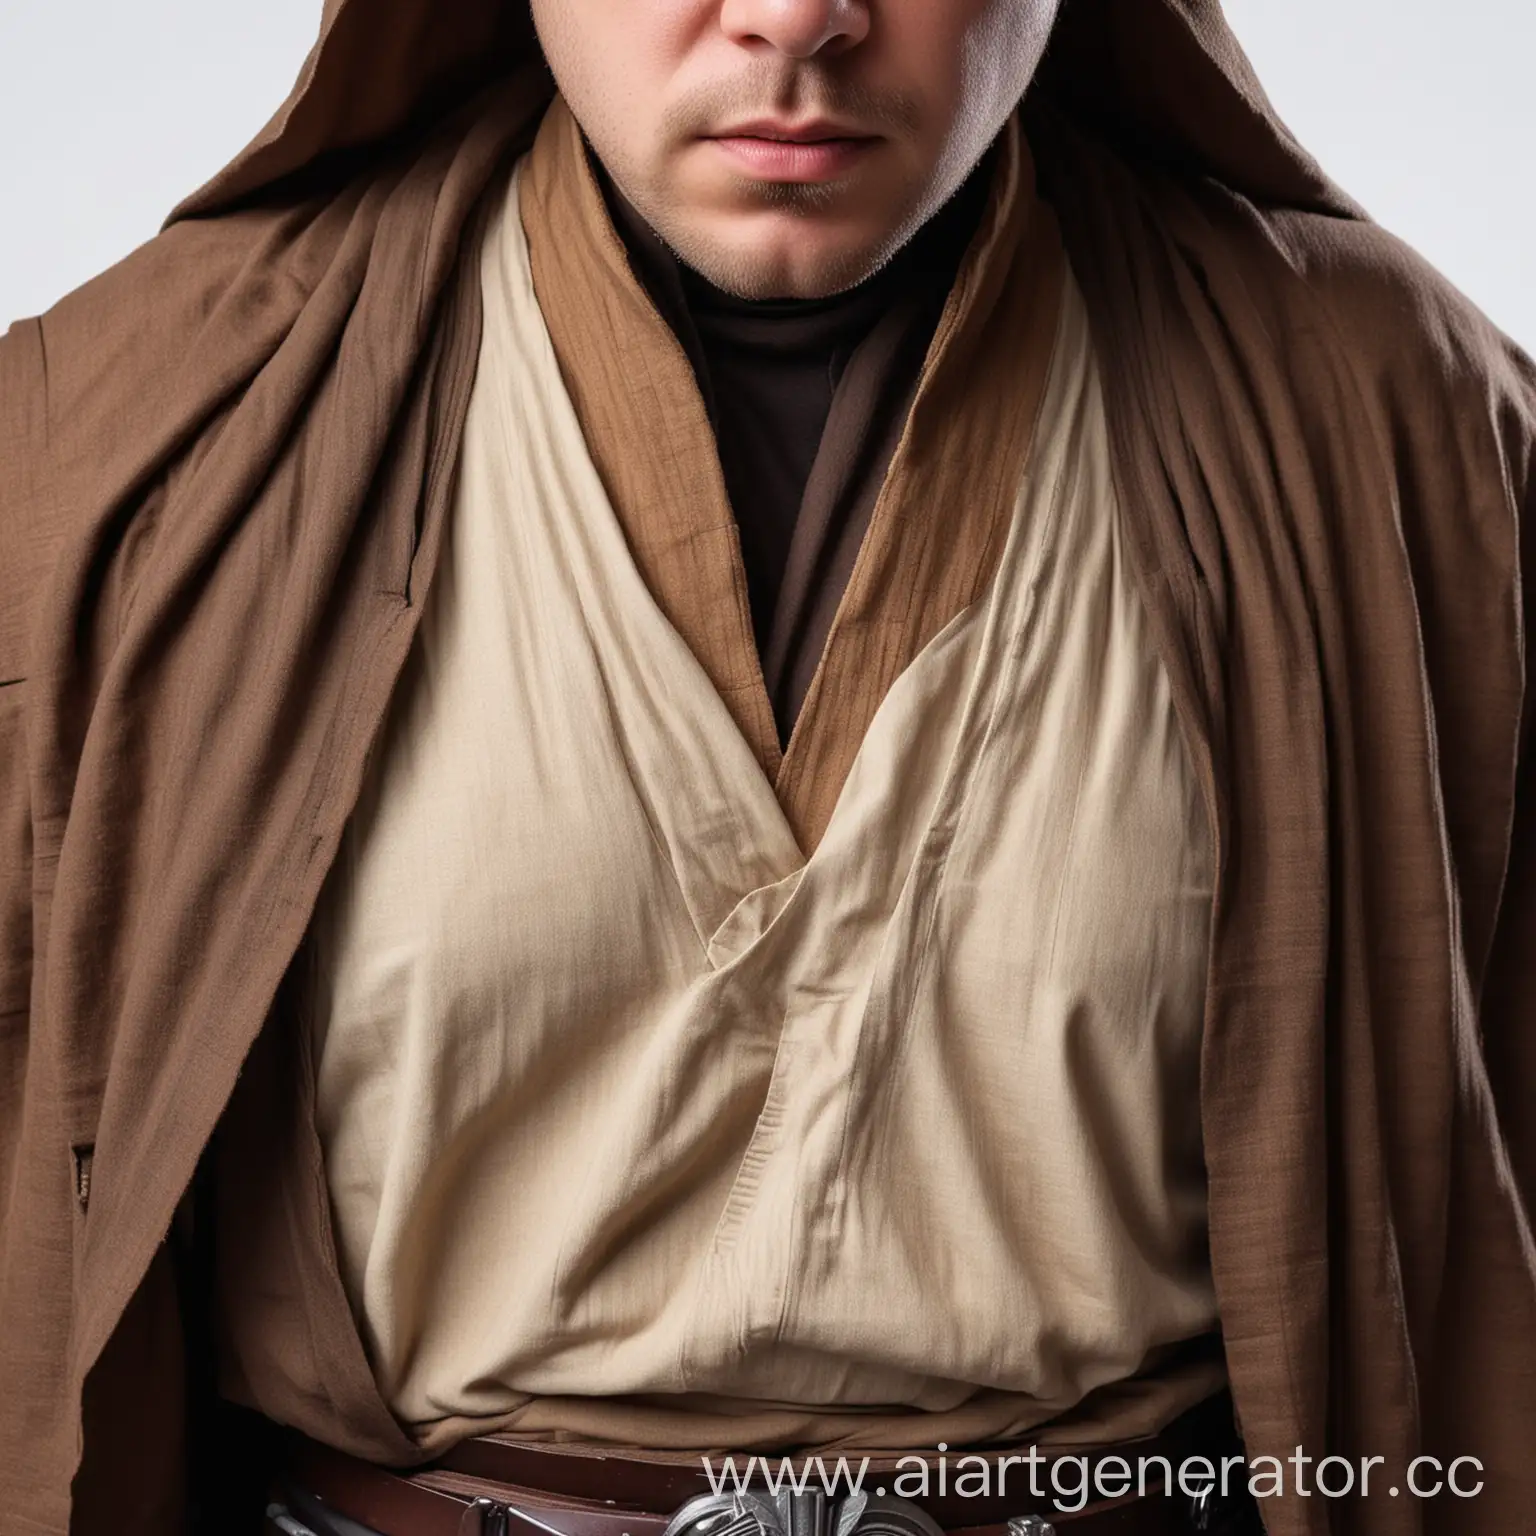 Realistic-Jedi-Costume-Portrait-on-White-Background